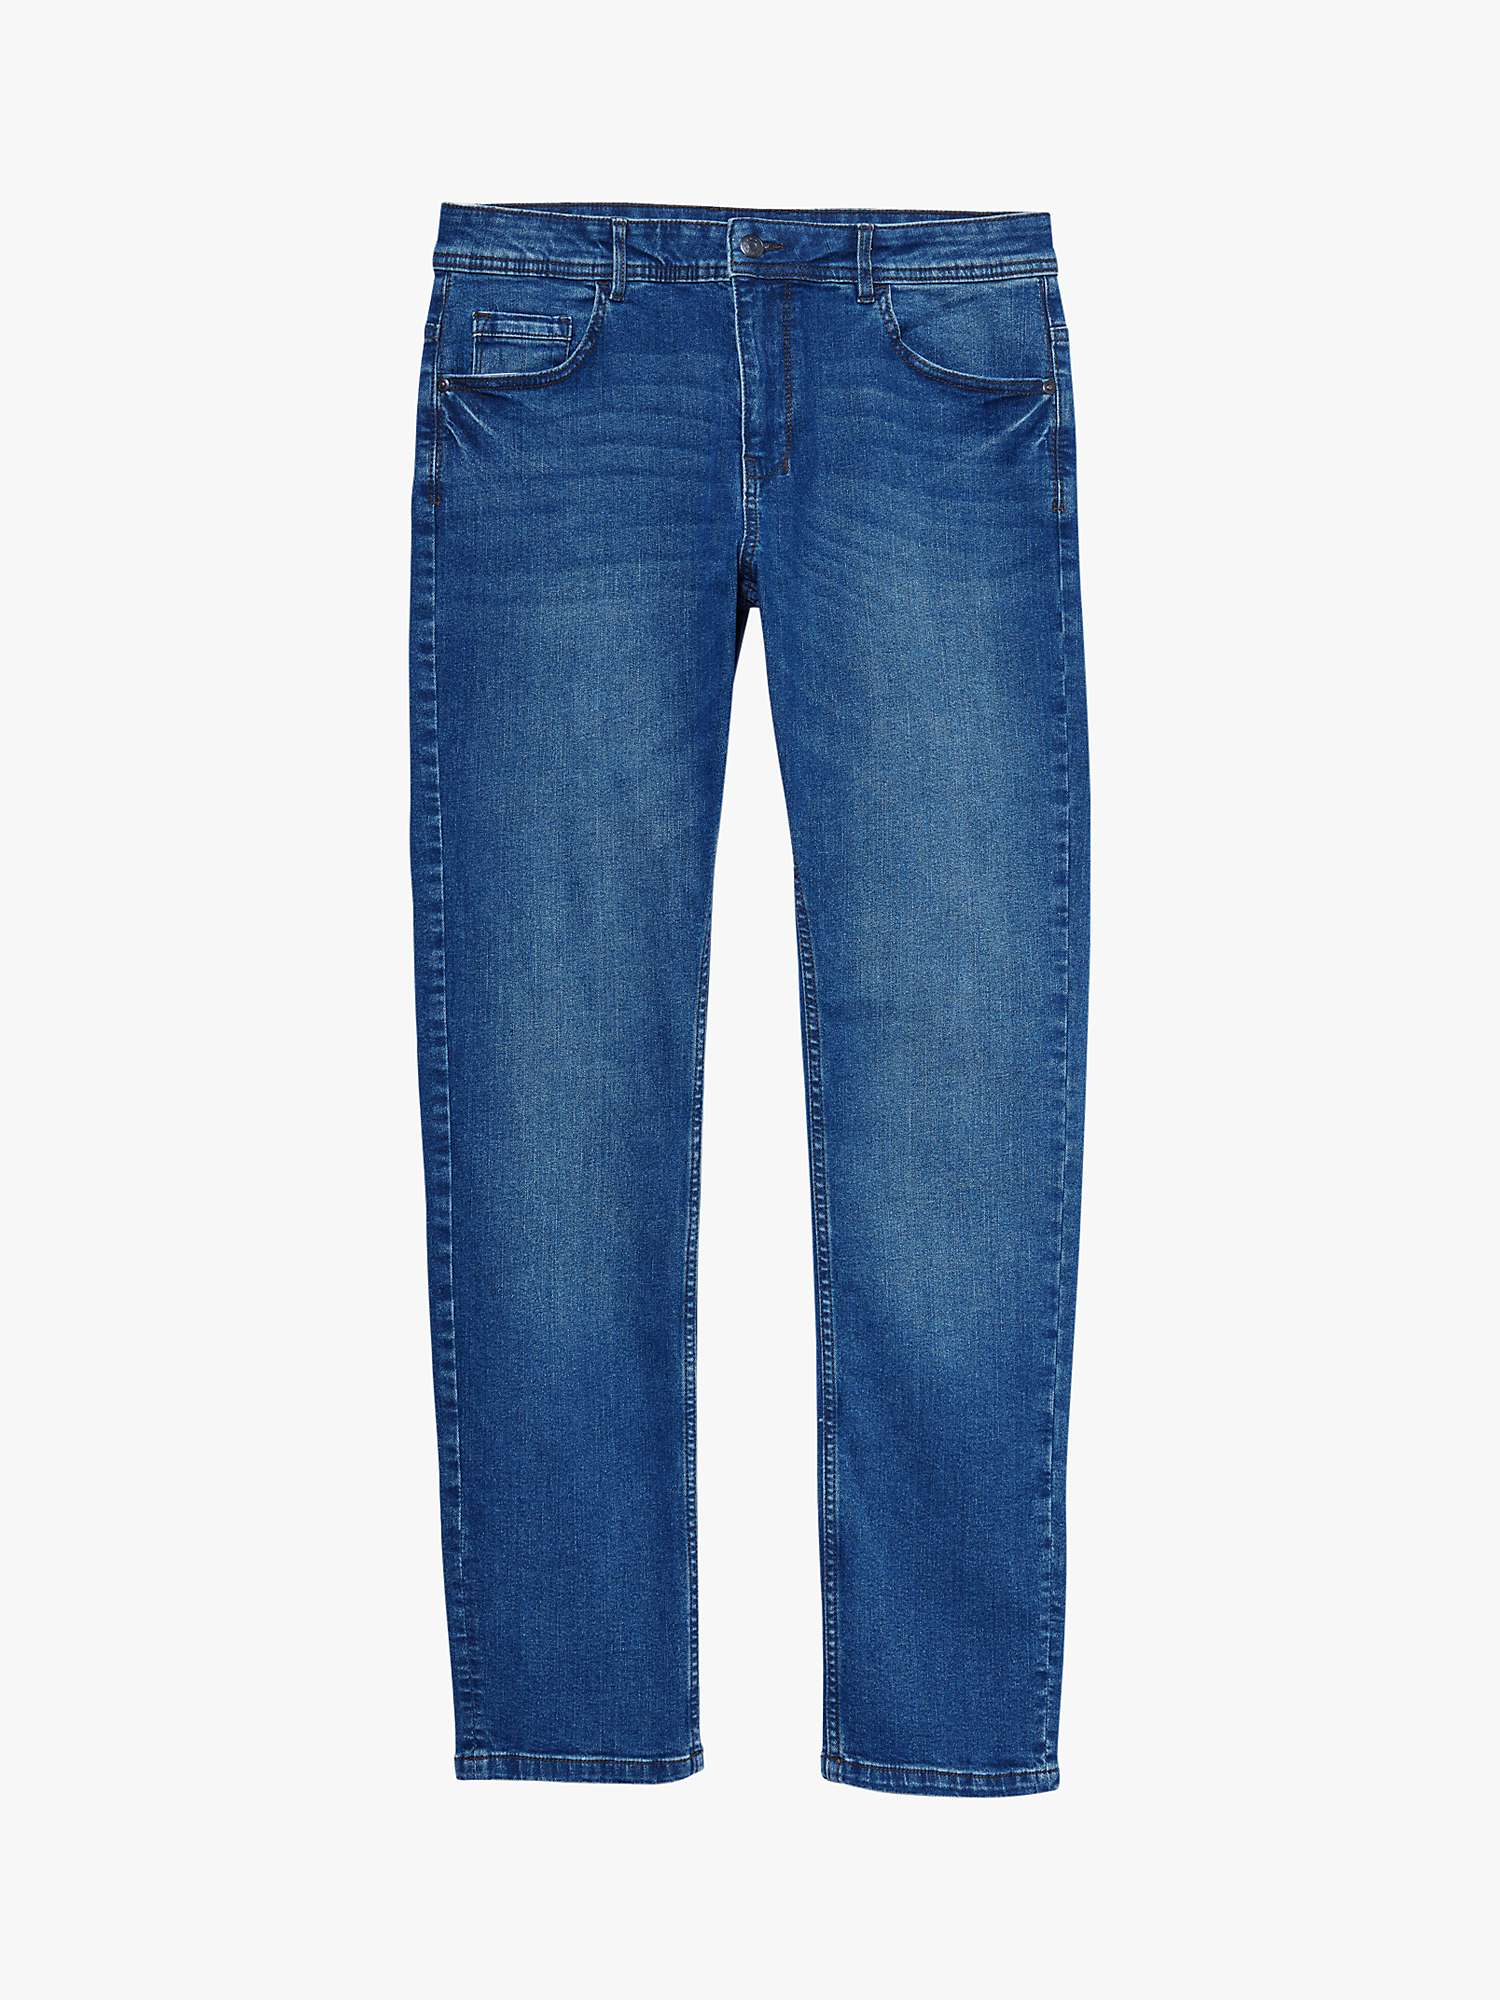 Buy SISLEY Boston Slim Fit Jeans, Blue Online at johnlewis.com